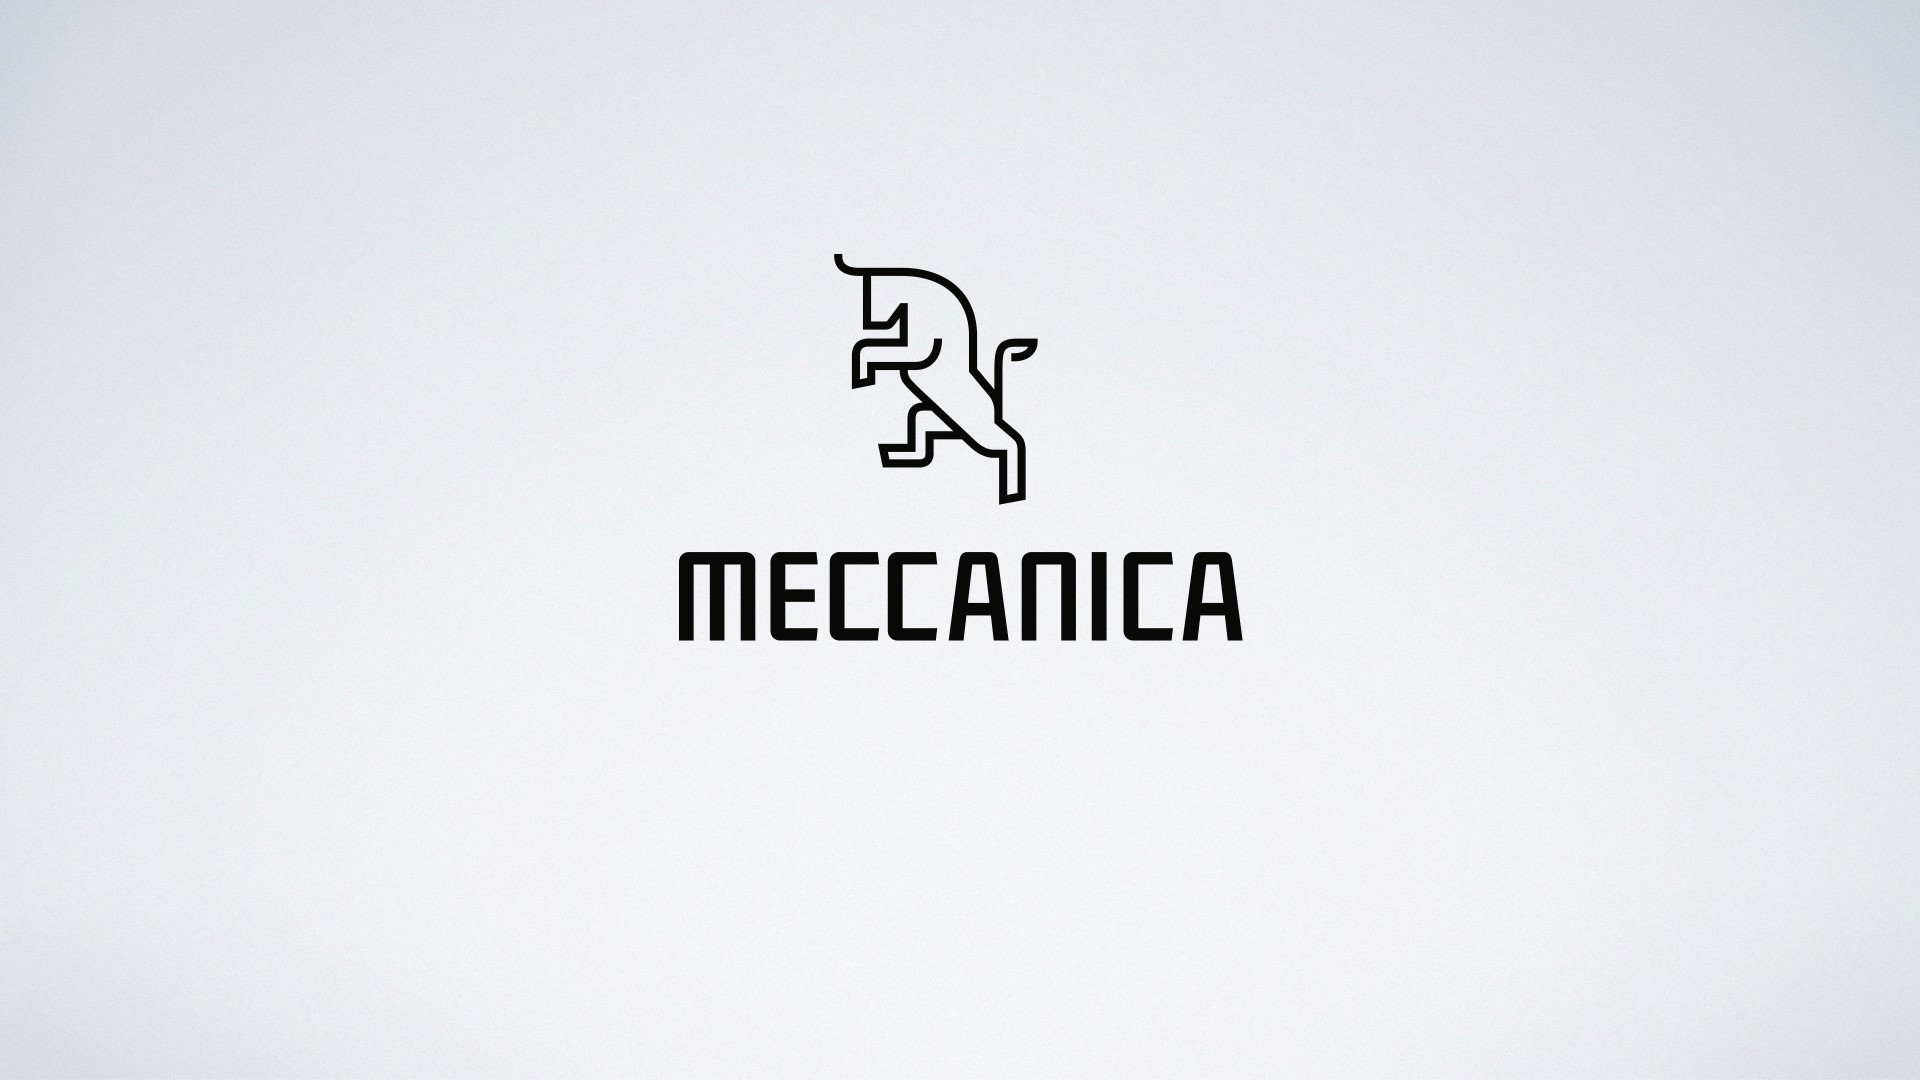 Meccanica.jpg